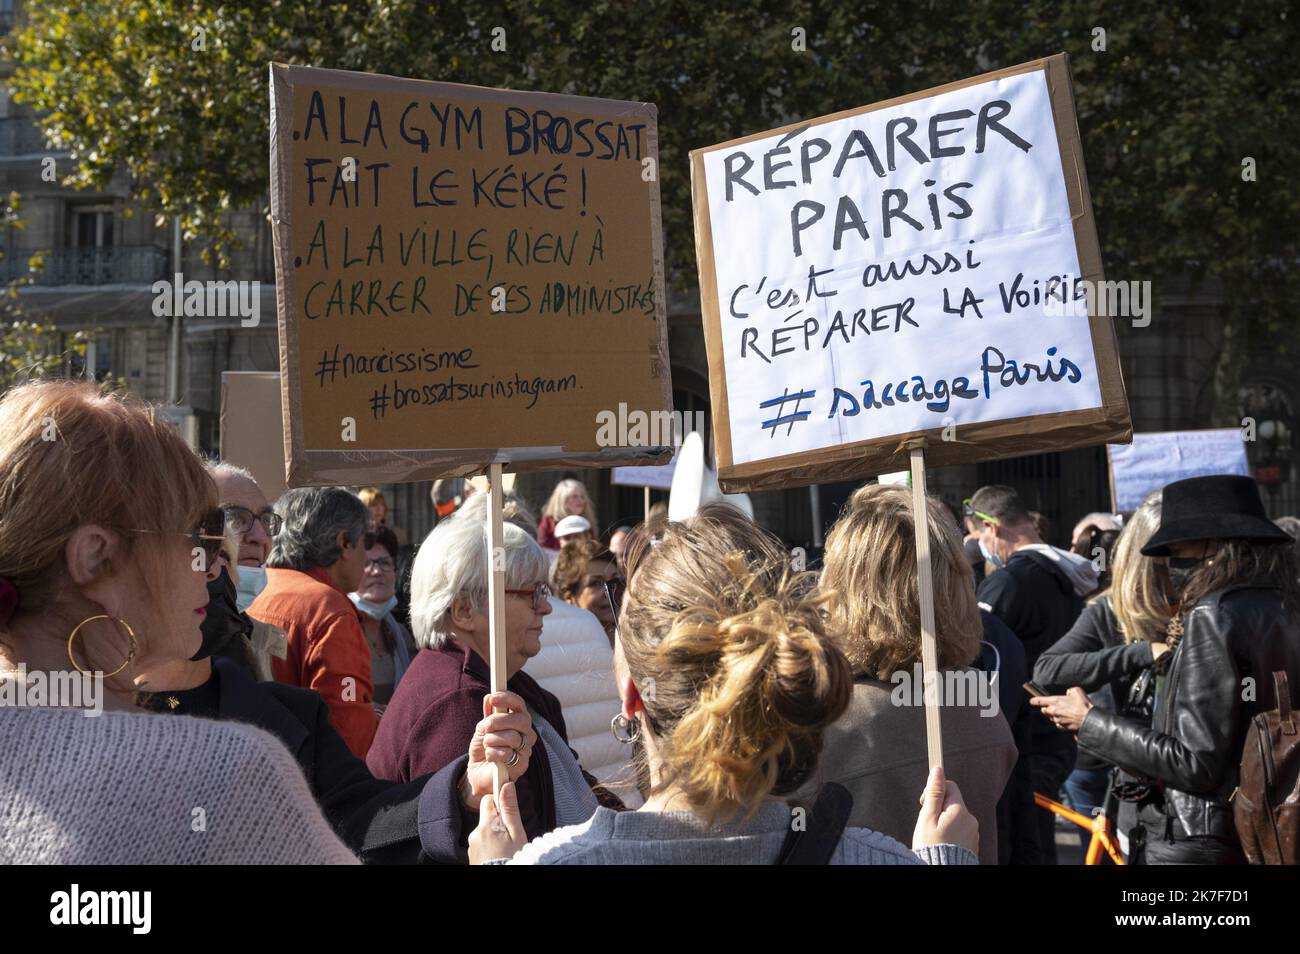 ©Julien Mattia / le Pictorium/MAXPPP - assemblaggio #SaccageParis, des associations de flueains parisiens contre la politique de la Mairie de Paris. Foto Stock